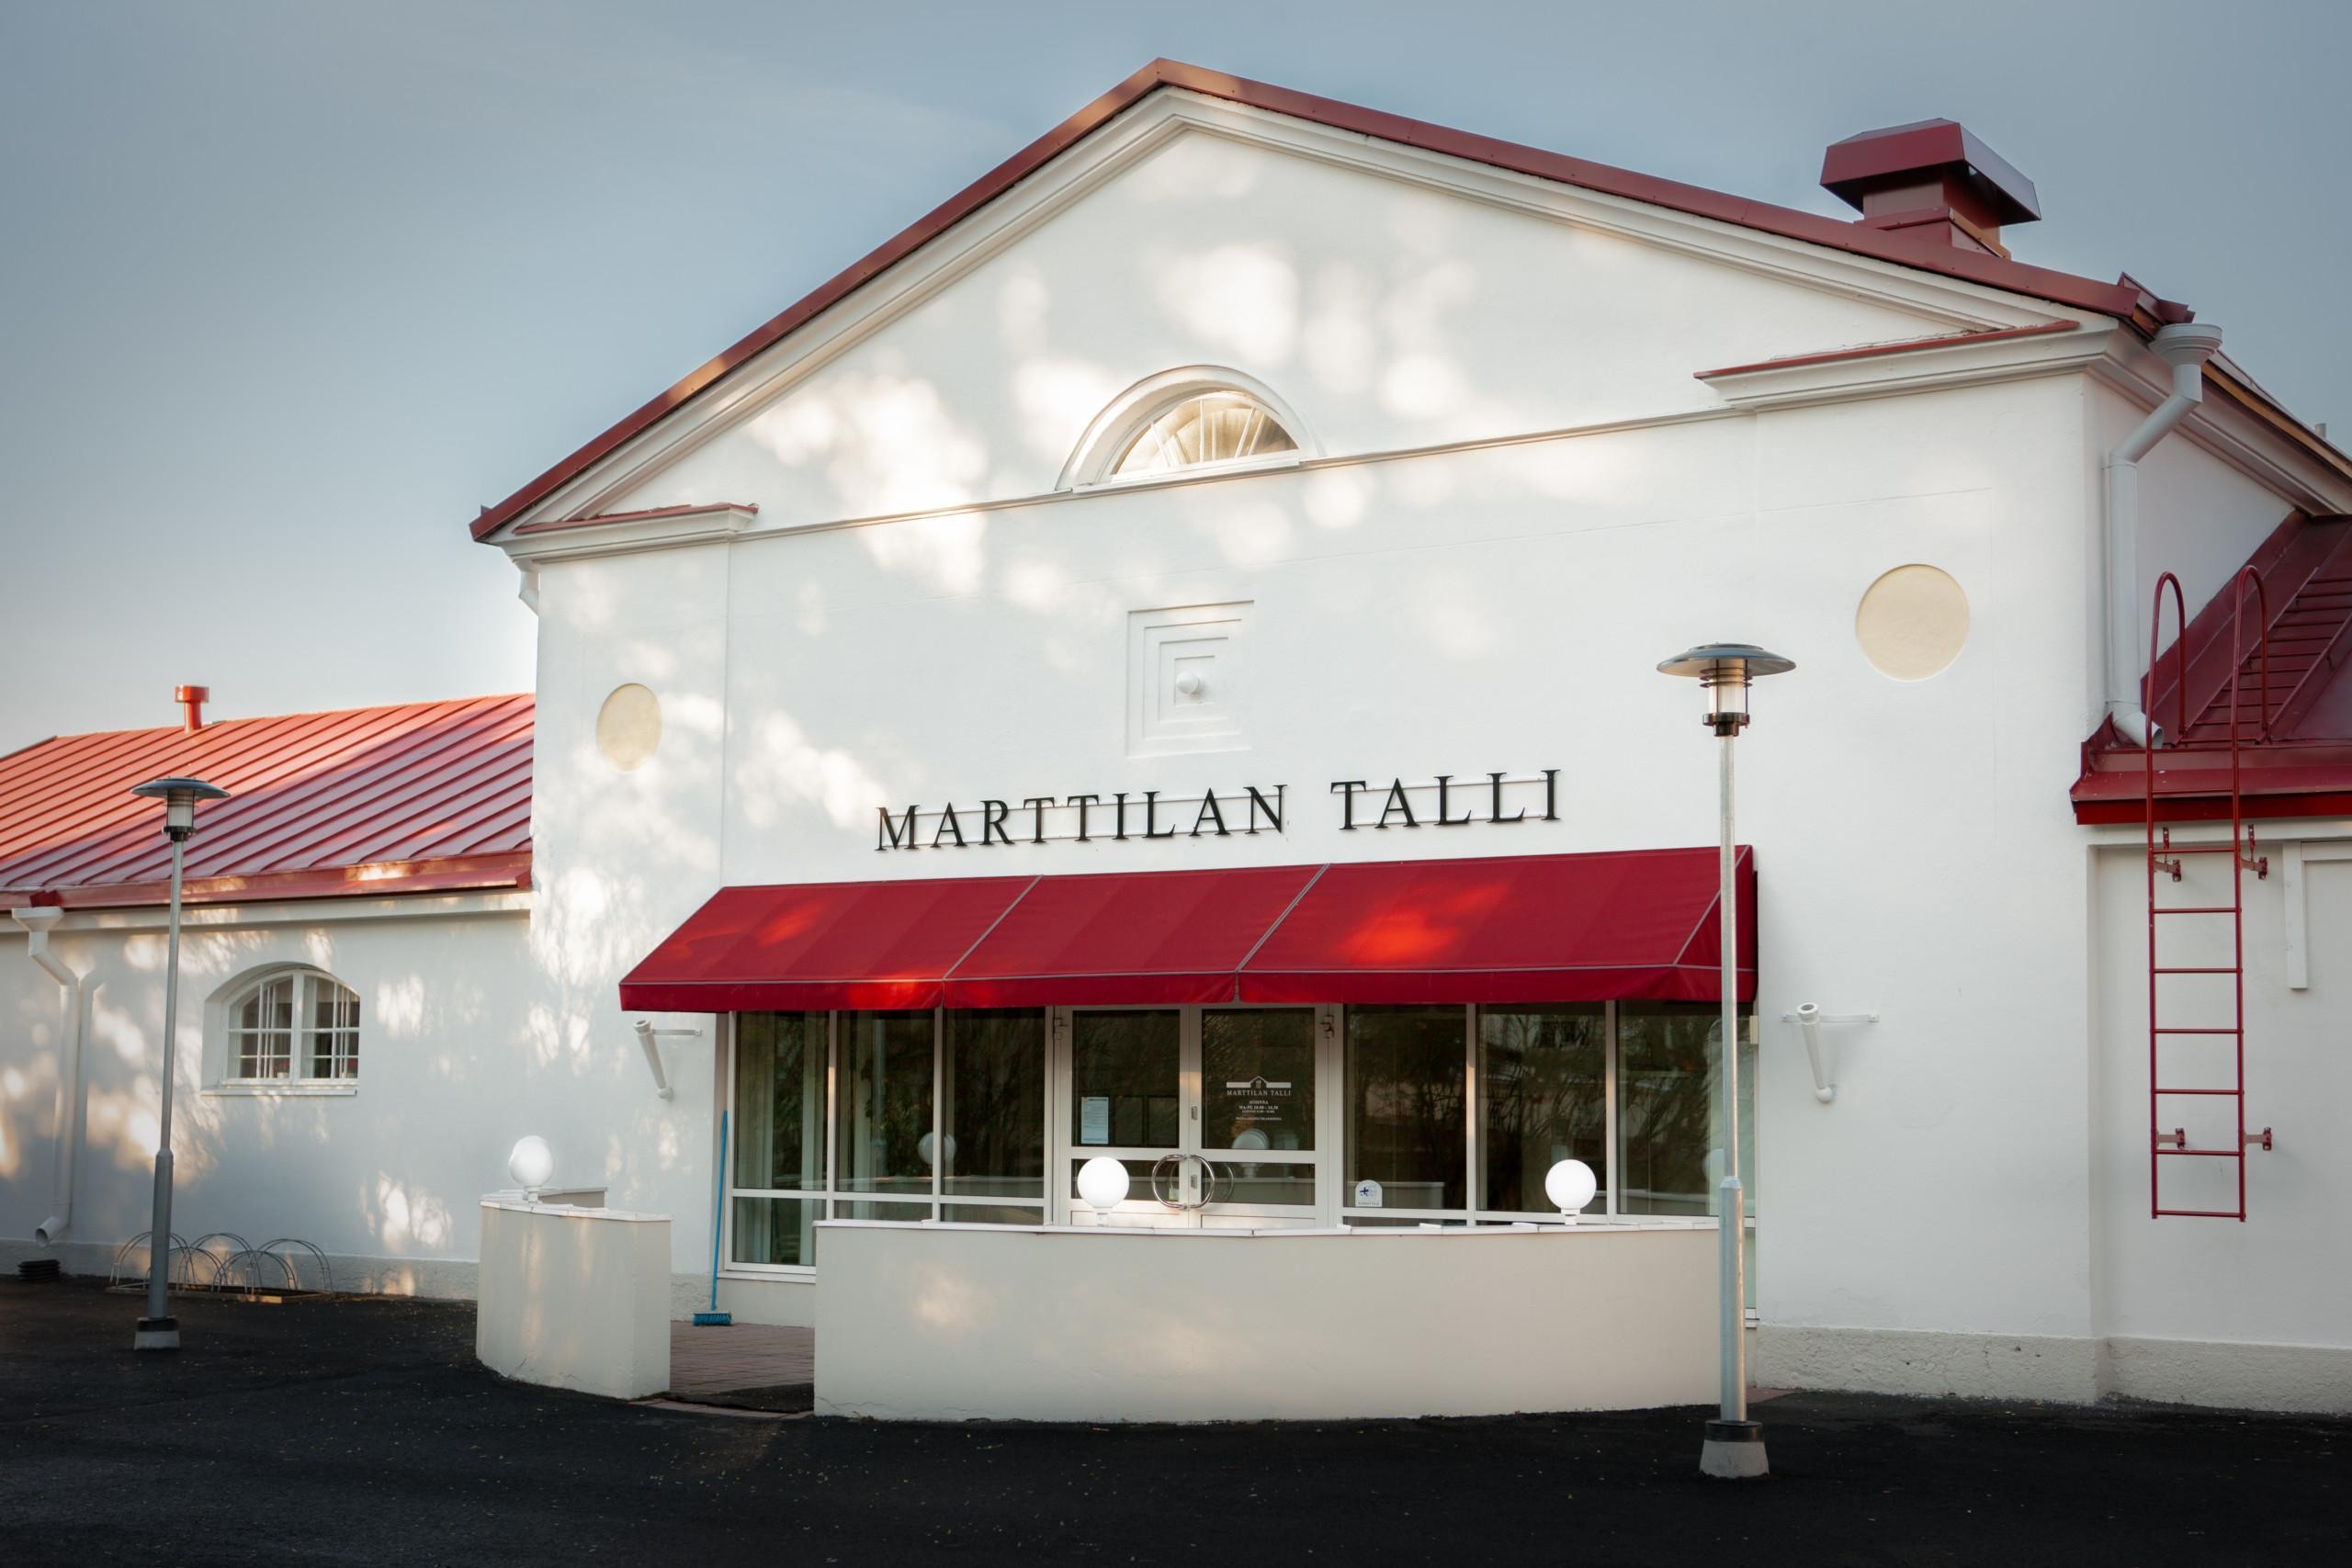 Ravintola Marttilan talli Marttilan miljöössä on toiminut aiemmin hevostallina.